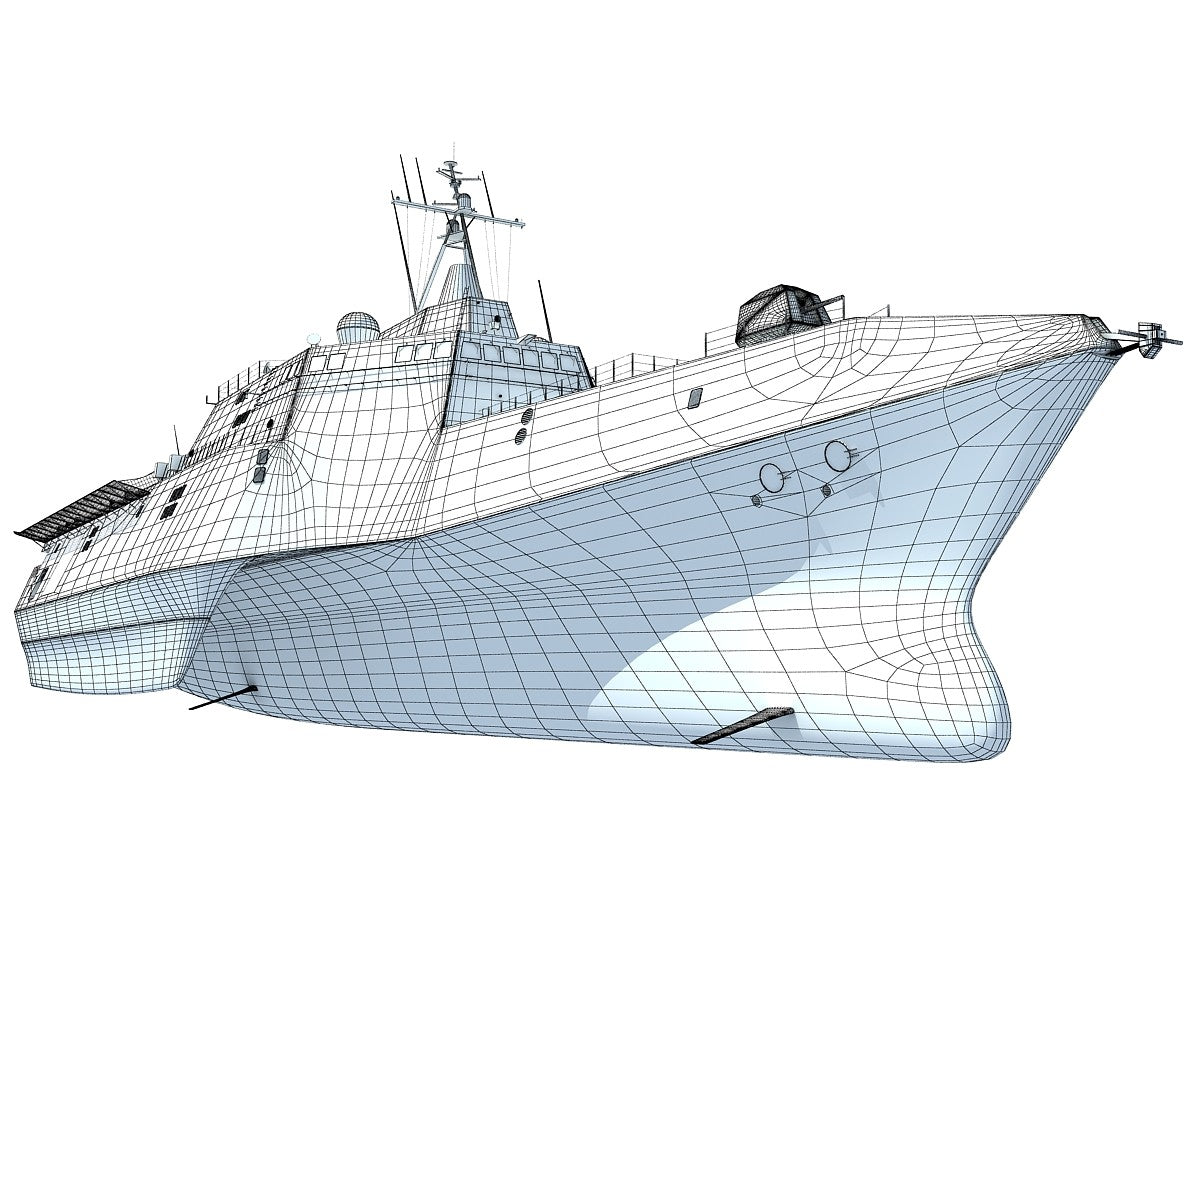  LCS-2 Trimaran Ship 3D Model